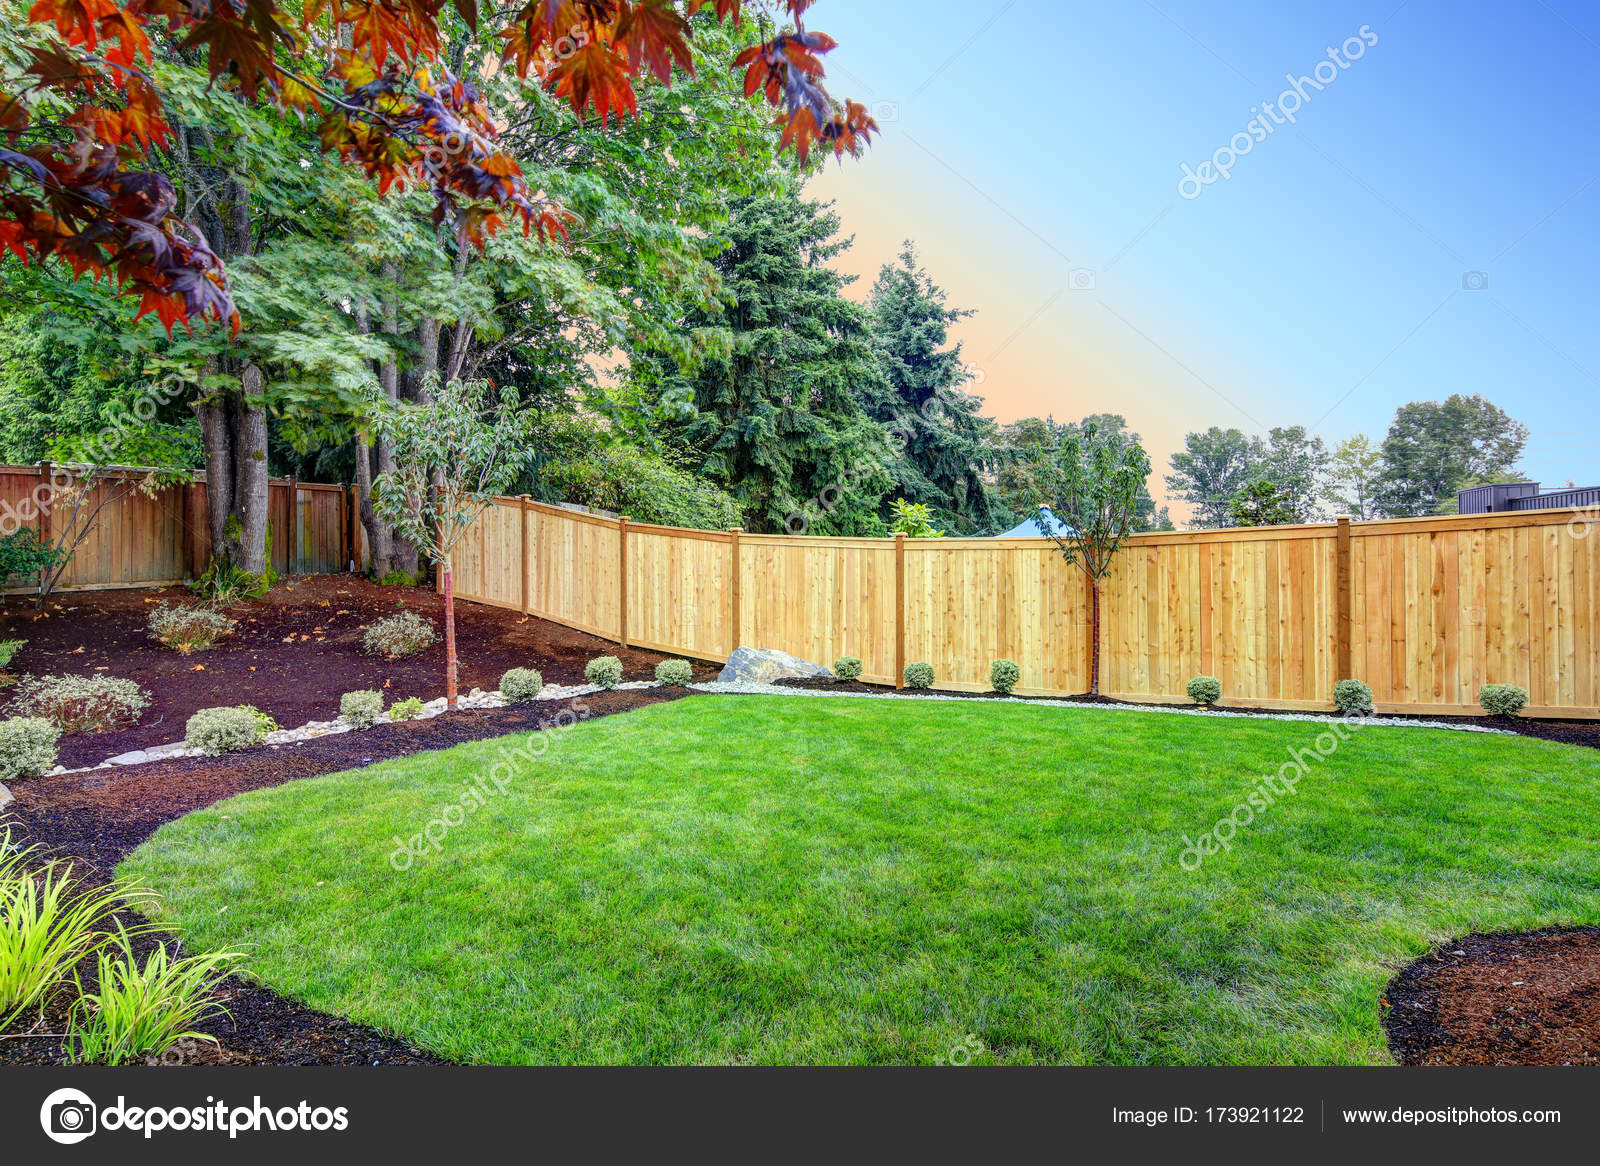 Nice Fenced Backyard With New Planting Beds Stock Photo C Iriana88w 173921122